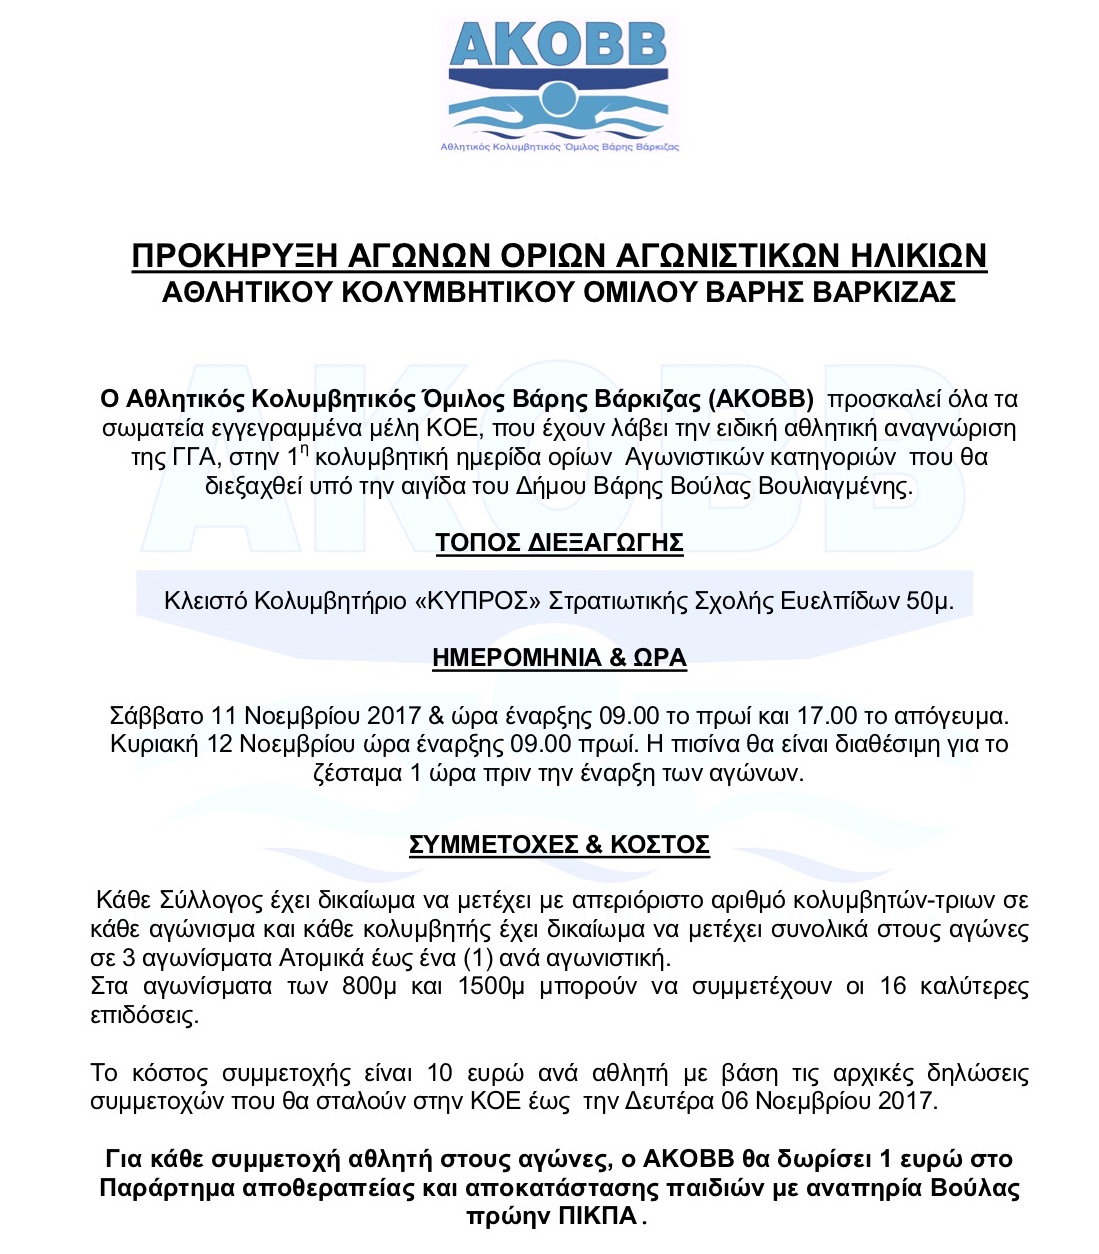 Προκήρυξη και η λίστα συμμετοχών (πηγή ΚΟΕ) κολυμβητικής ημερίδας ορίων πανελληνίων πρωταθλημάτων κολύμβησης ΑΚΟΒΒ